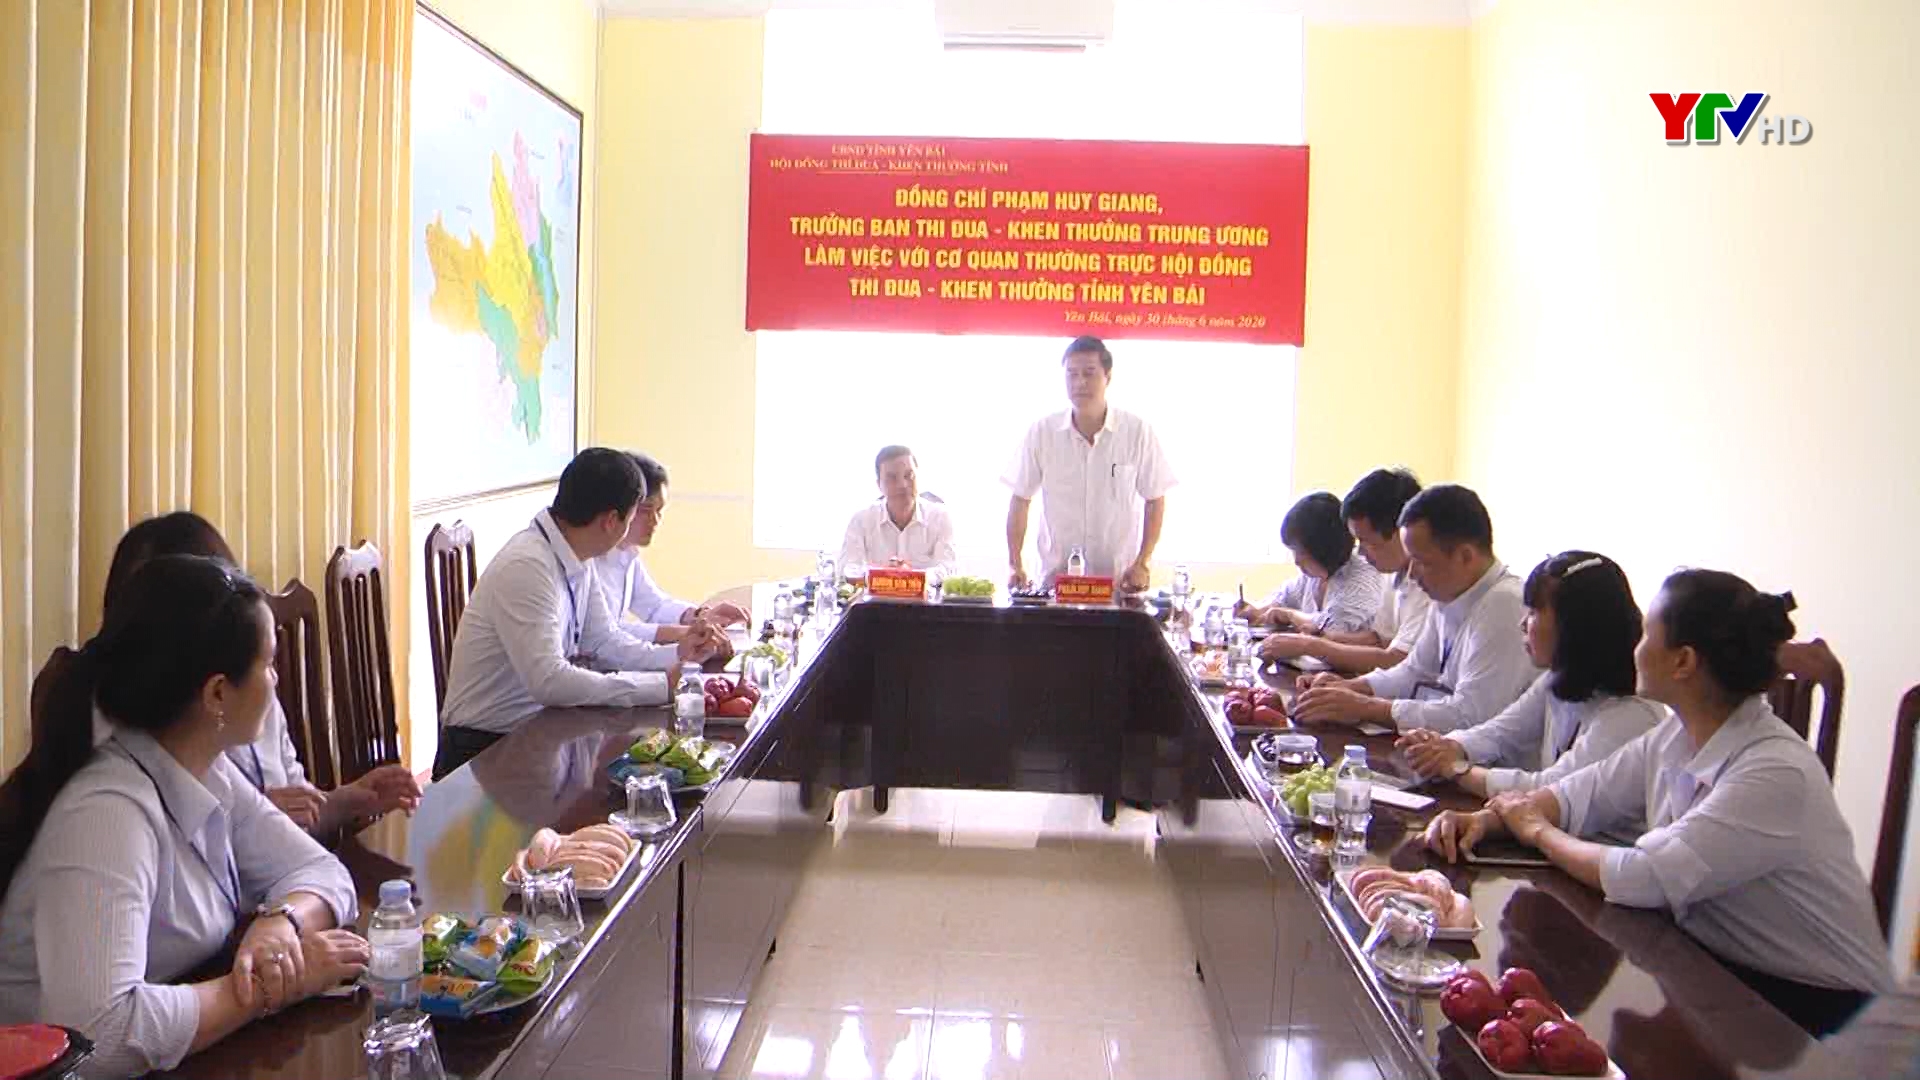 Đoàn công tác của Ban Thi đua – Khen thưởng Trung ương làm việc tại tỉnh Yên Bái